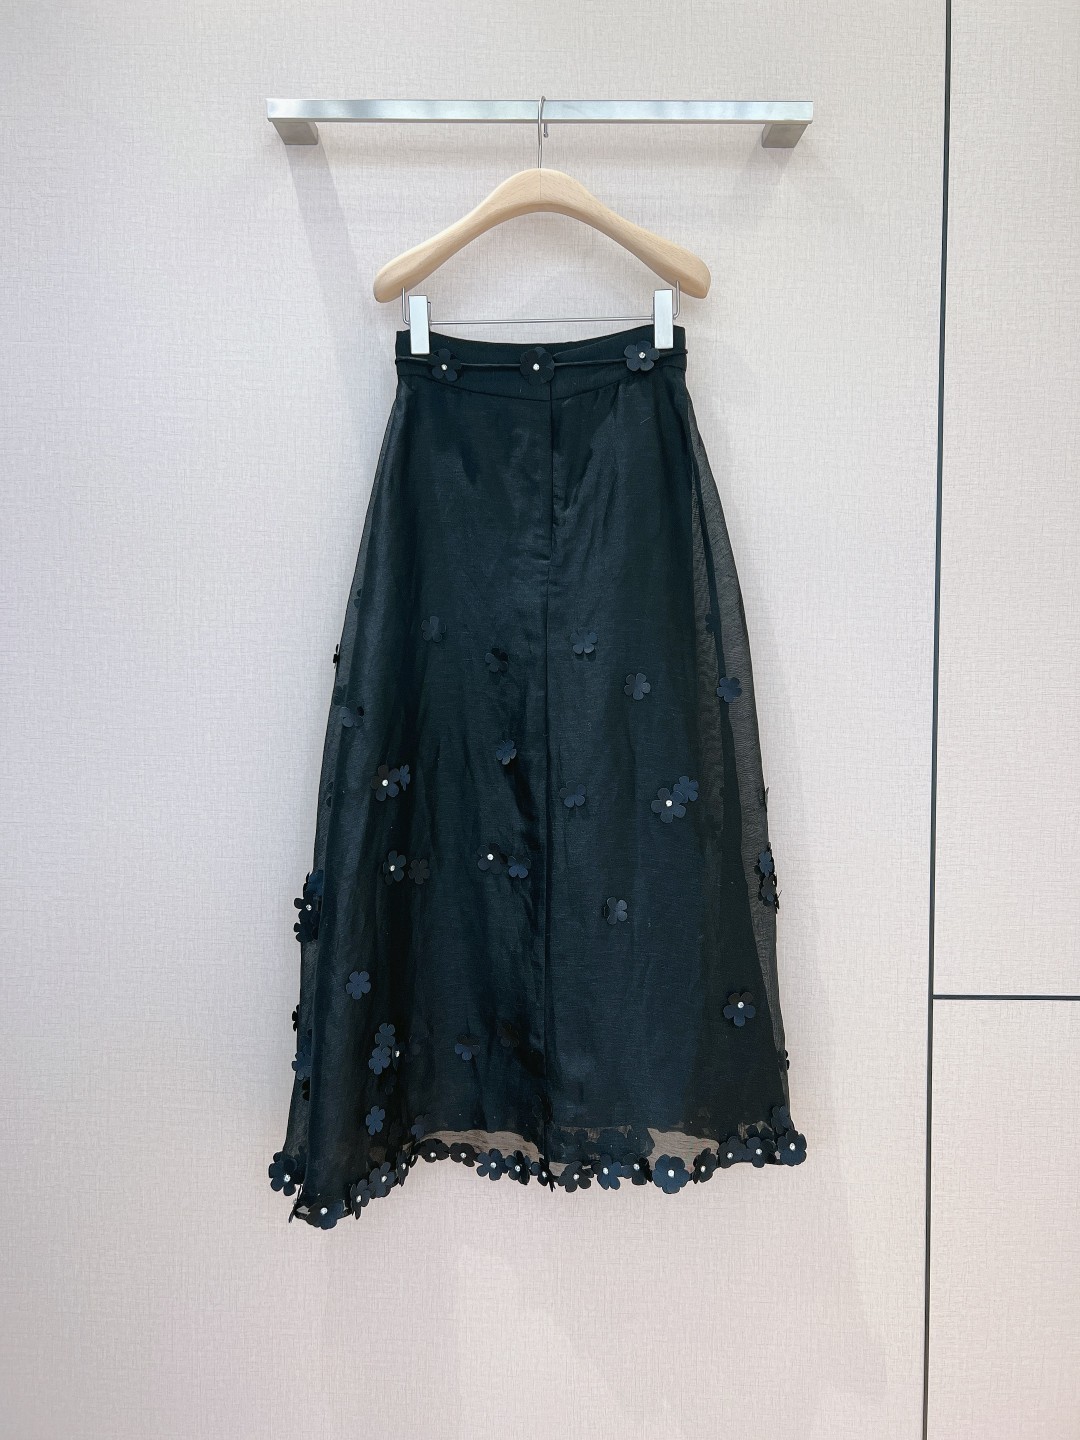 澳洲设计师品牌Zimmerman*n新品丝麻料质地材质饰有精致3D花朵贴花网纱半身裙的裙身上饰有钻石立体